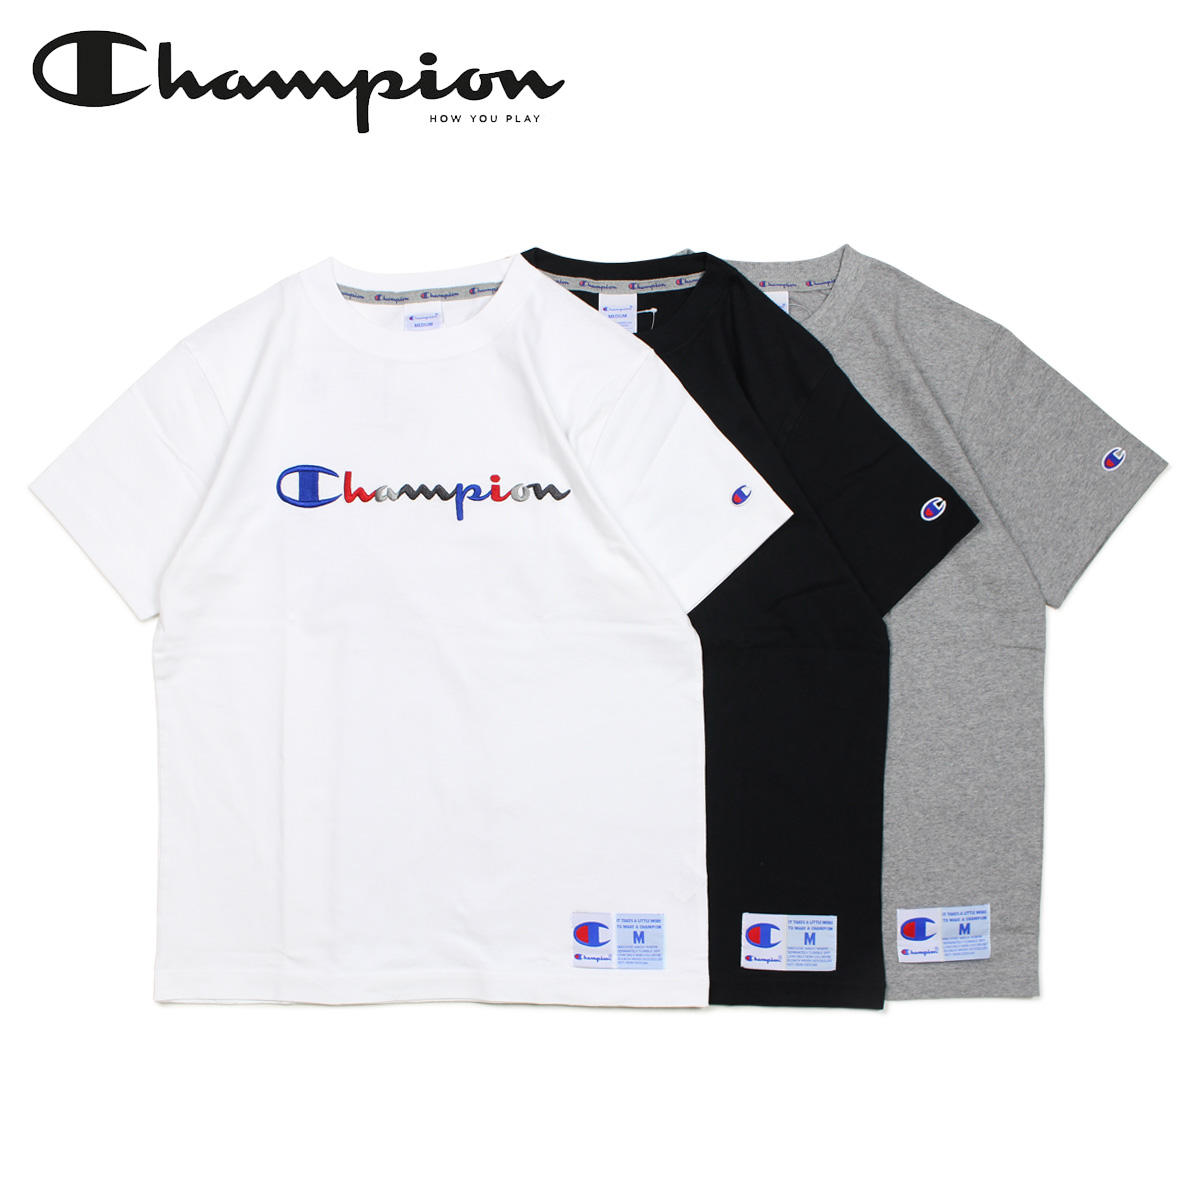 champion black and white shirt